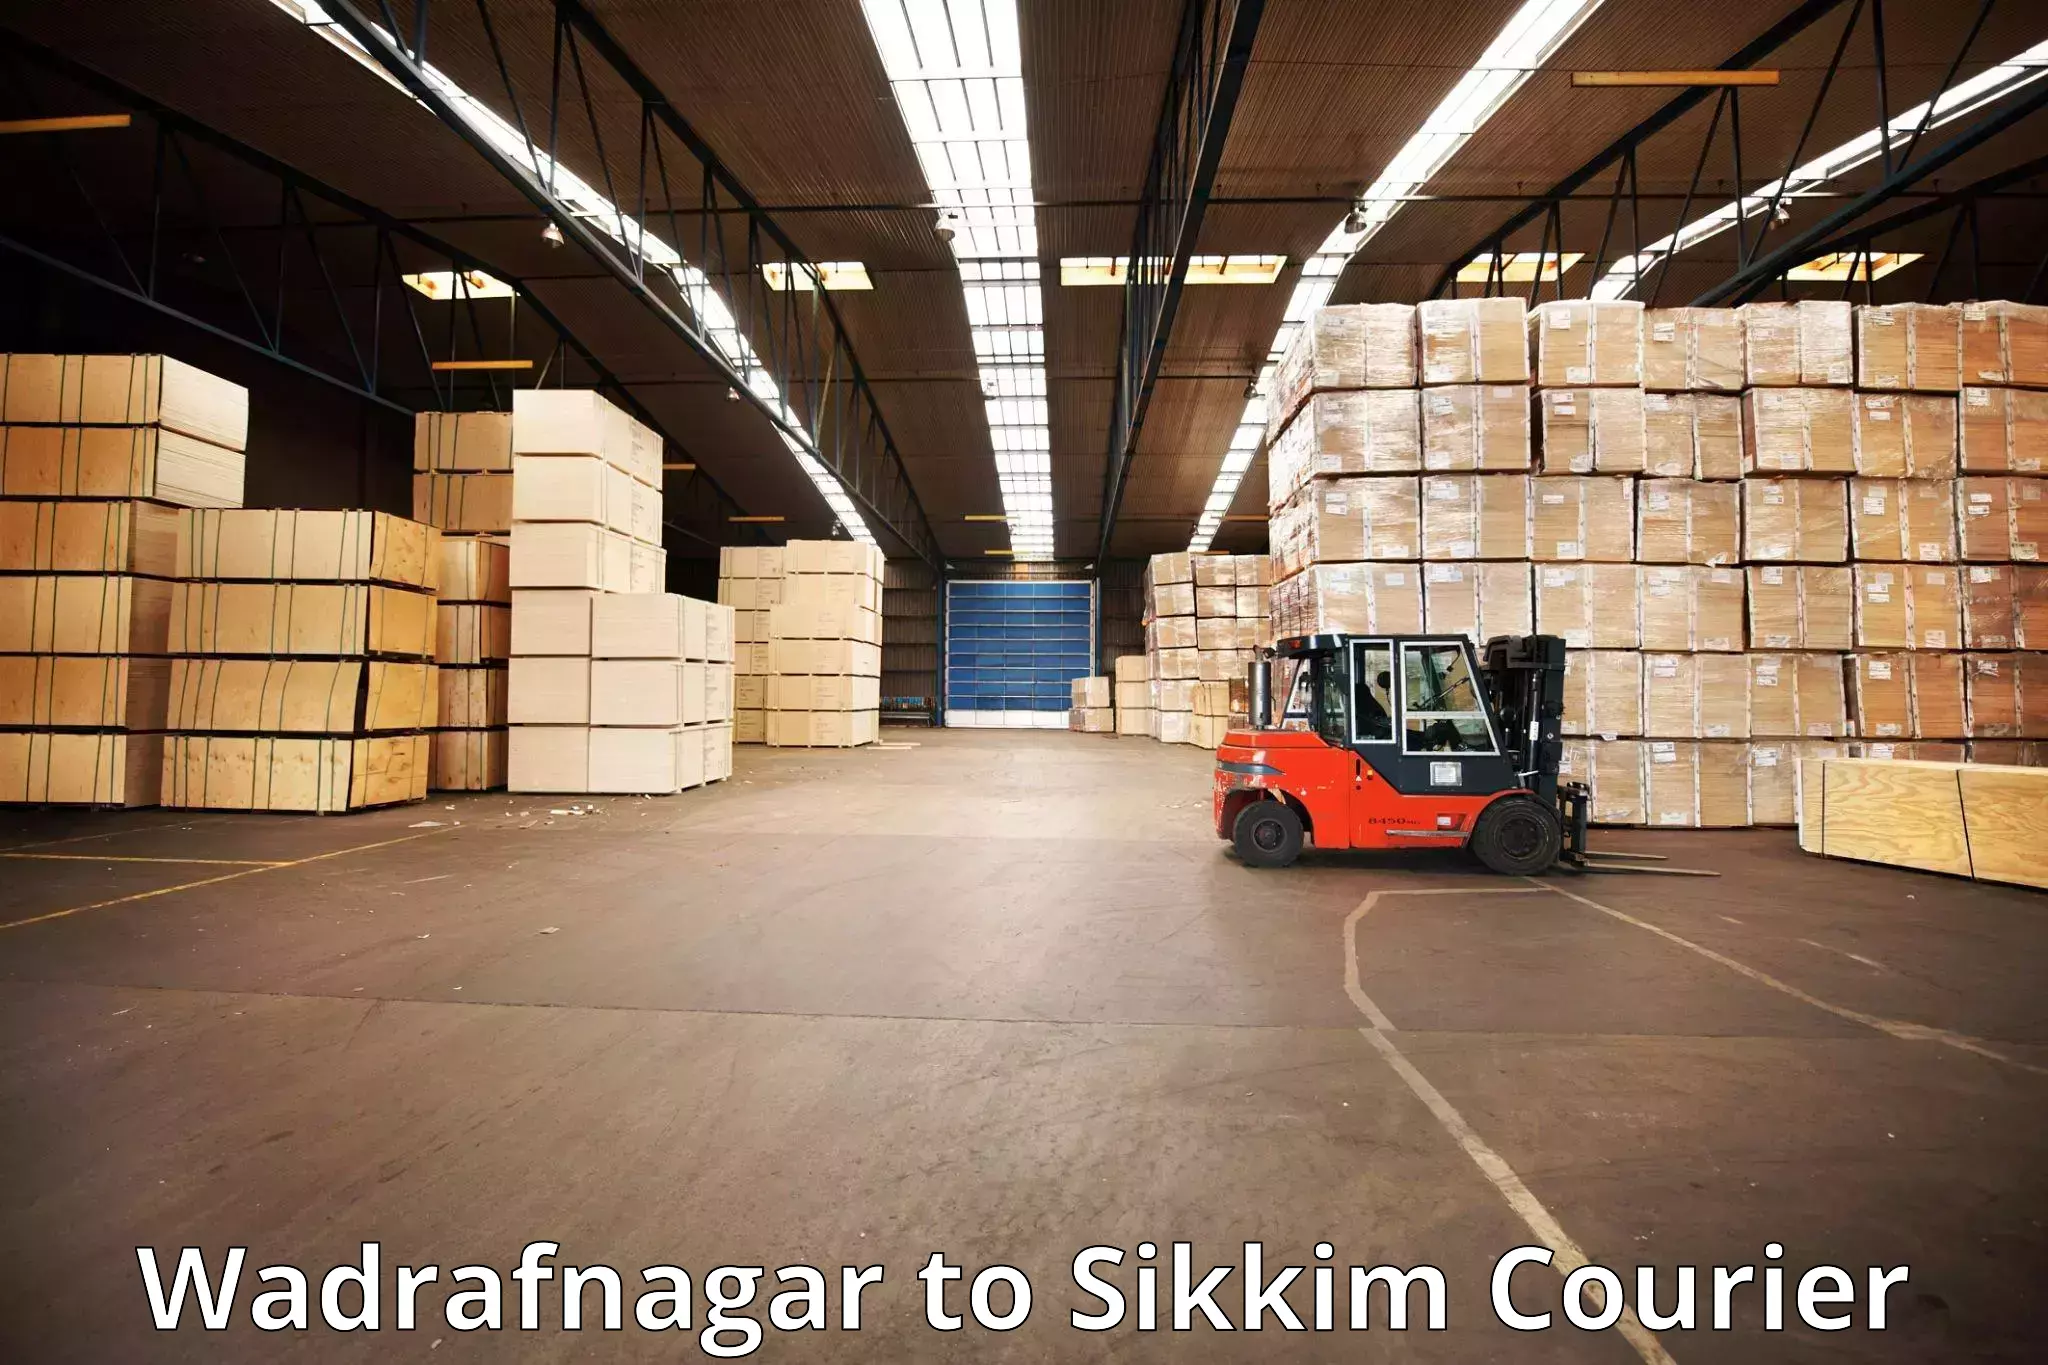 Baggage transport innovation Wadrafnagar to Singtam